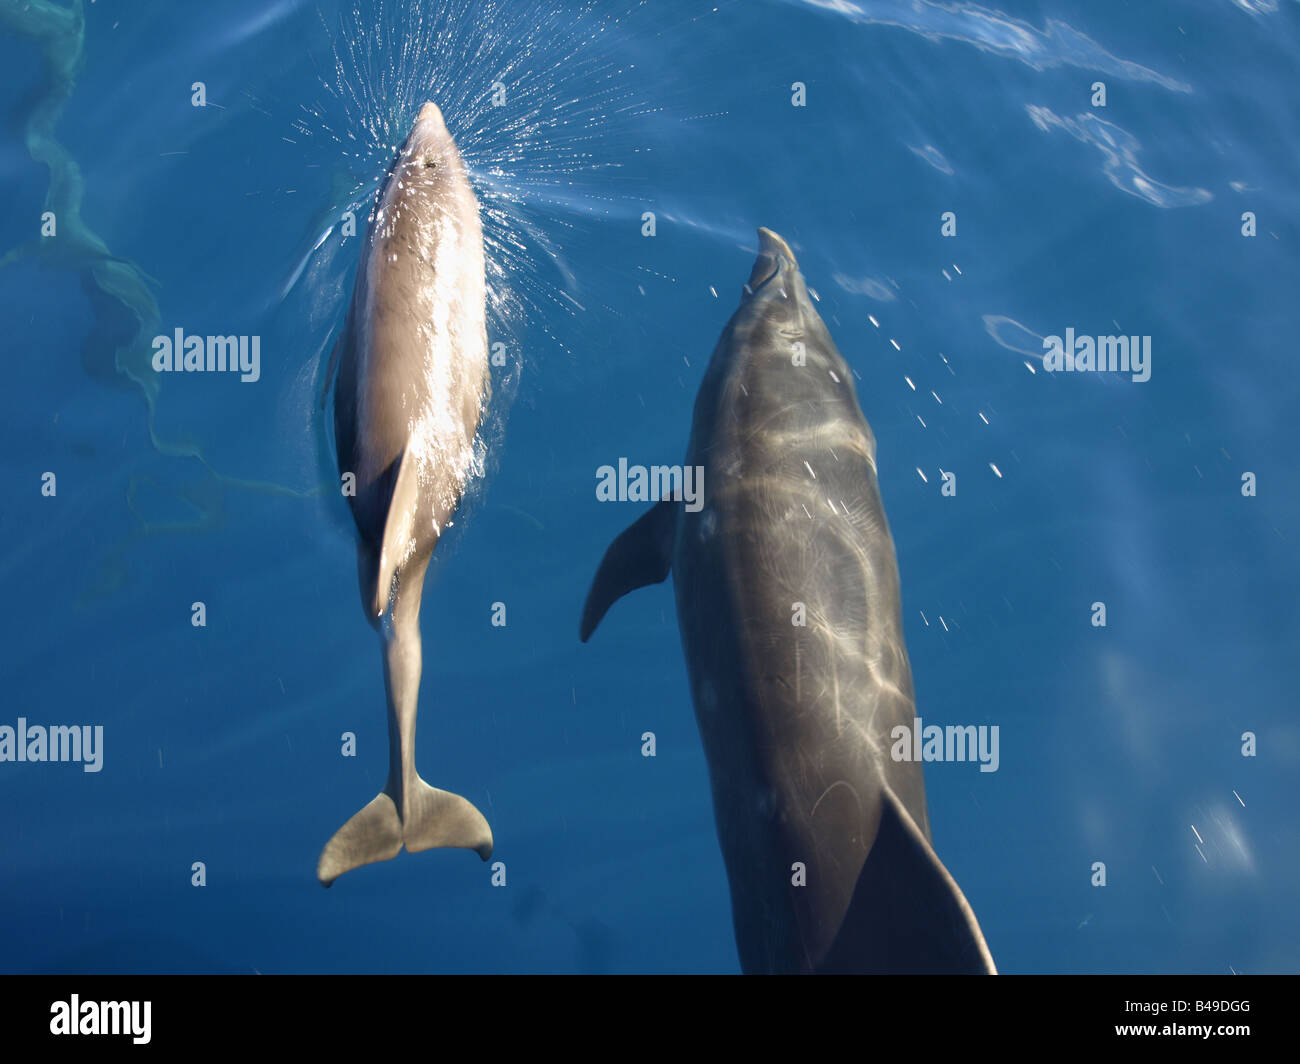 Dolphins by the Wainae coast of Oahu, Hawaii Stock Photo